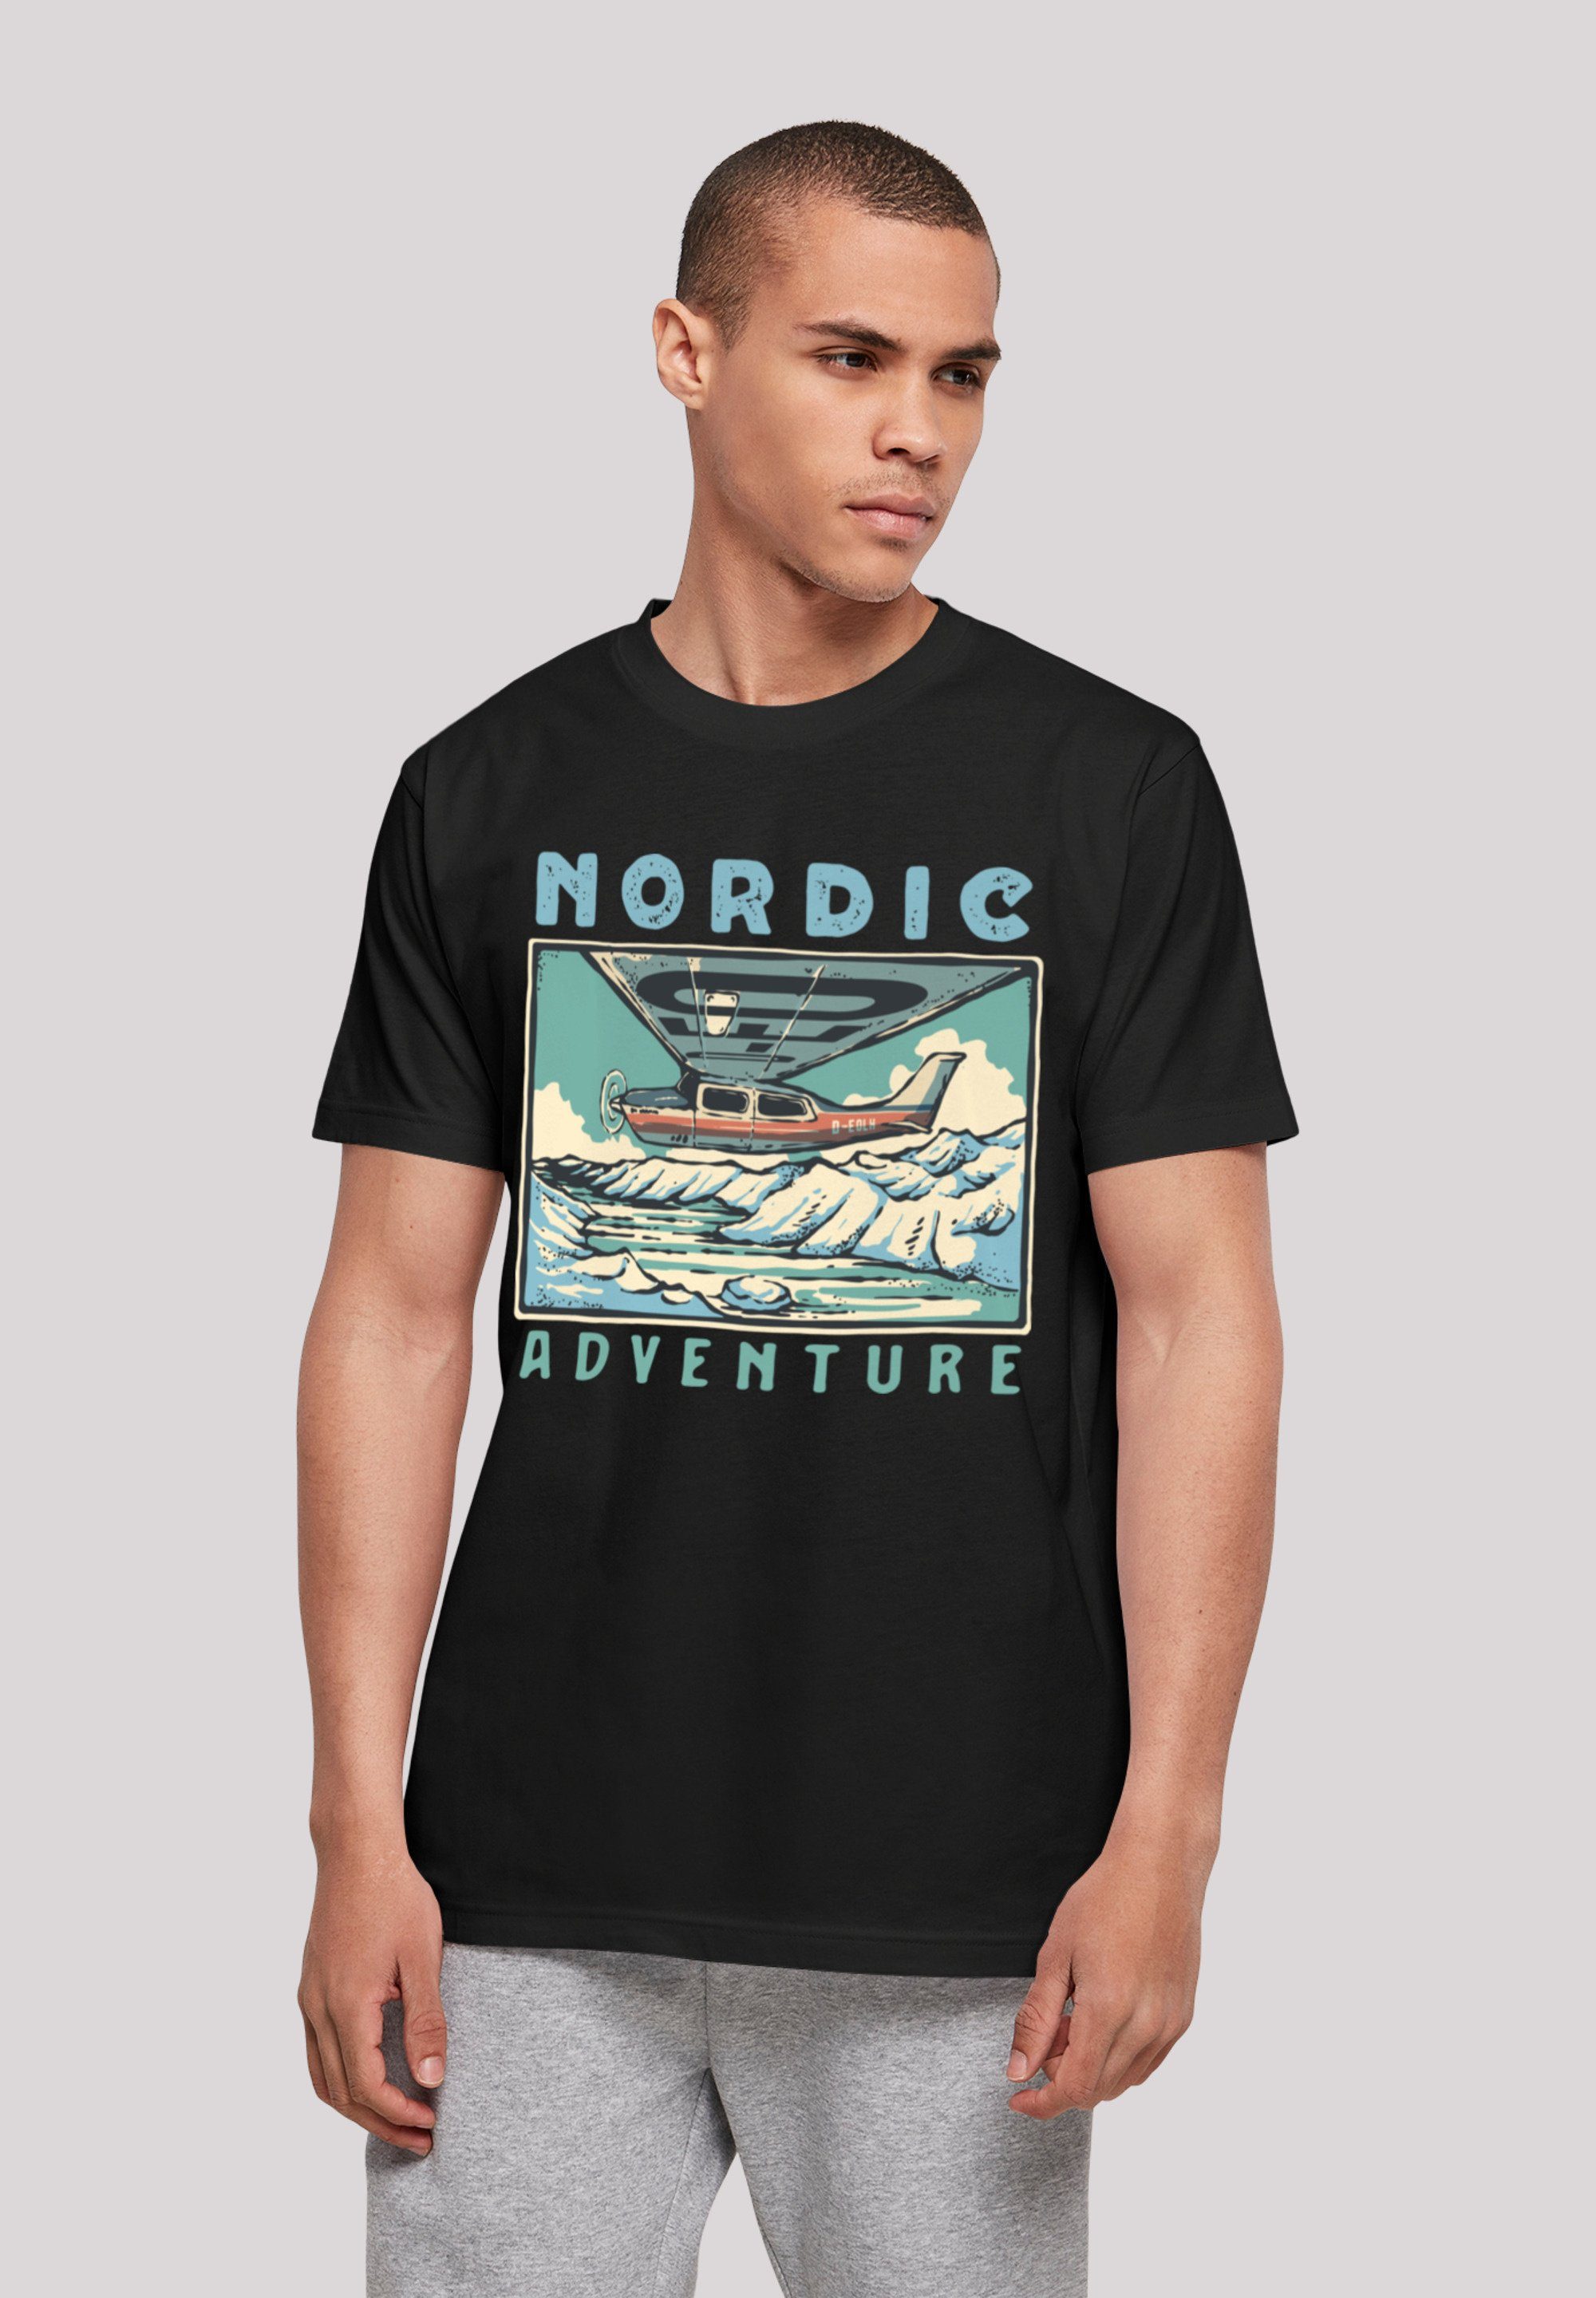 F4NT4STIC T-Shirt Nordic Adventures Print, weicher Baumwollstoff hohem Tragekomfort mit Sehr